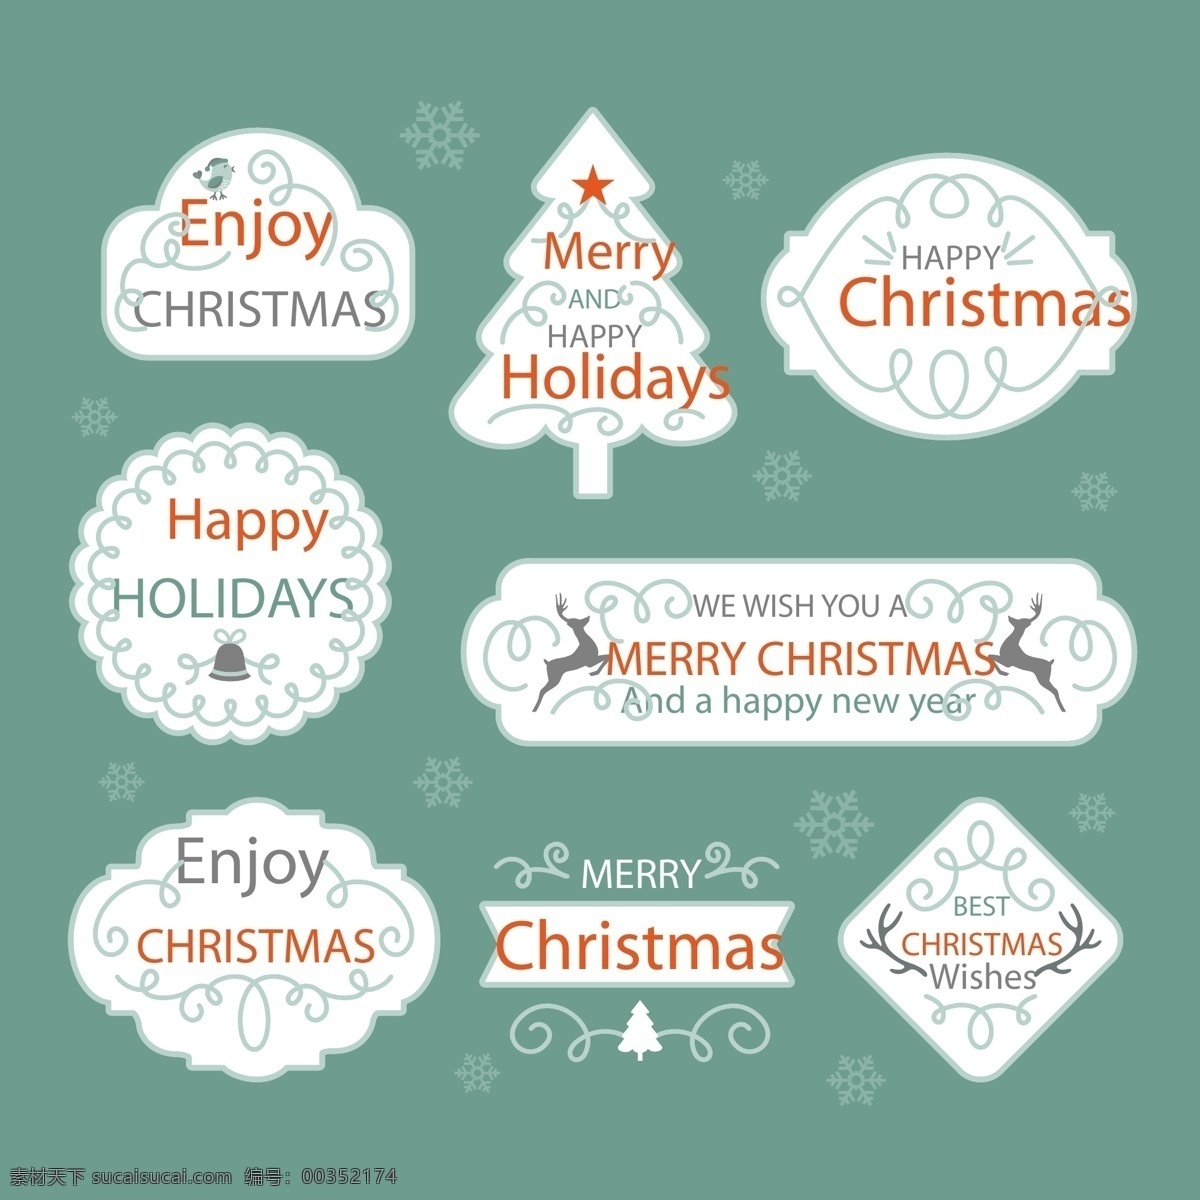 清新 花纹 圣诞 标签 创意 圣诞节 矢量素材 英文 圣诞树